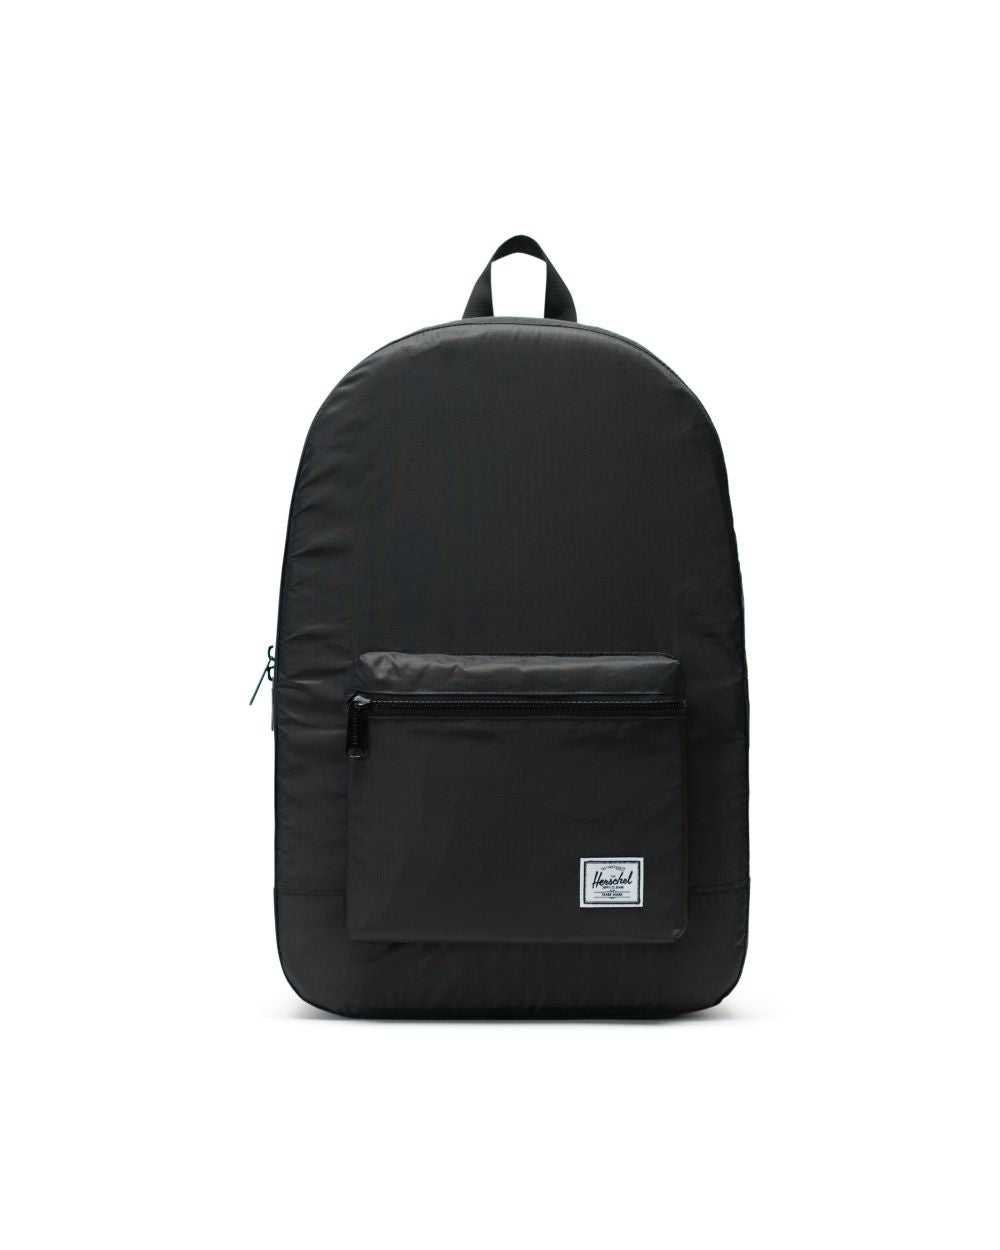 Herschel Packable Day Backpack